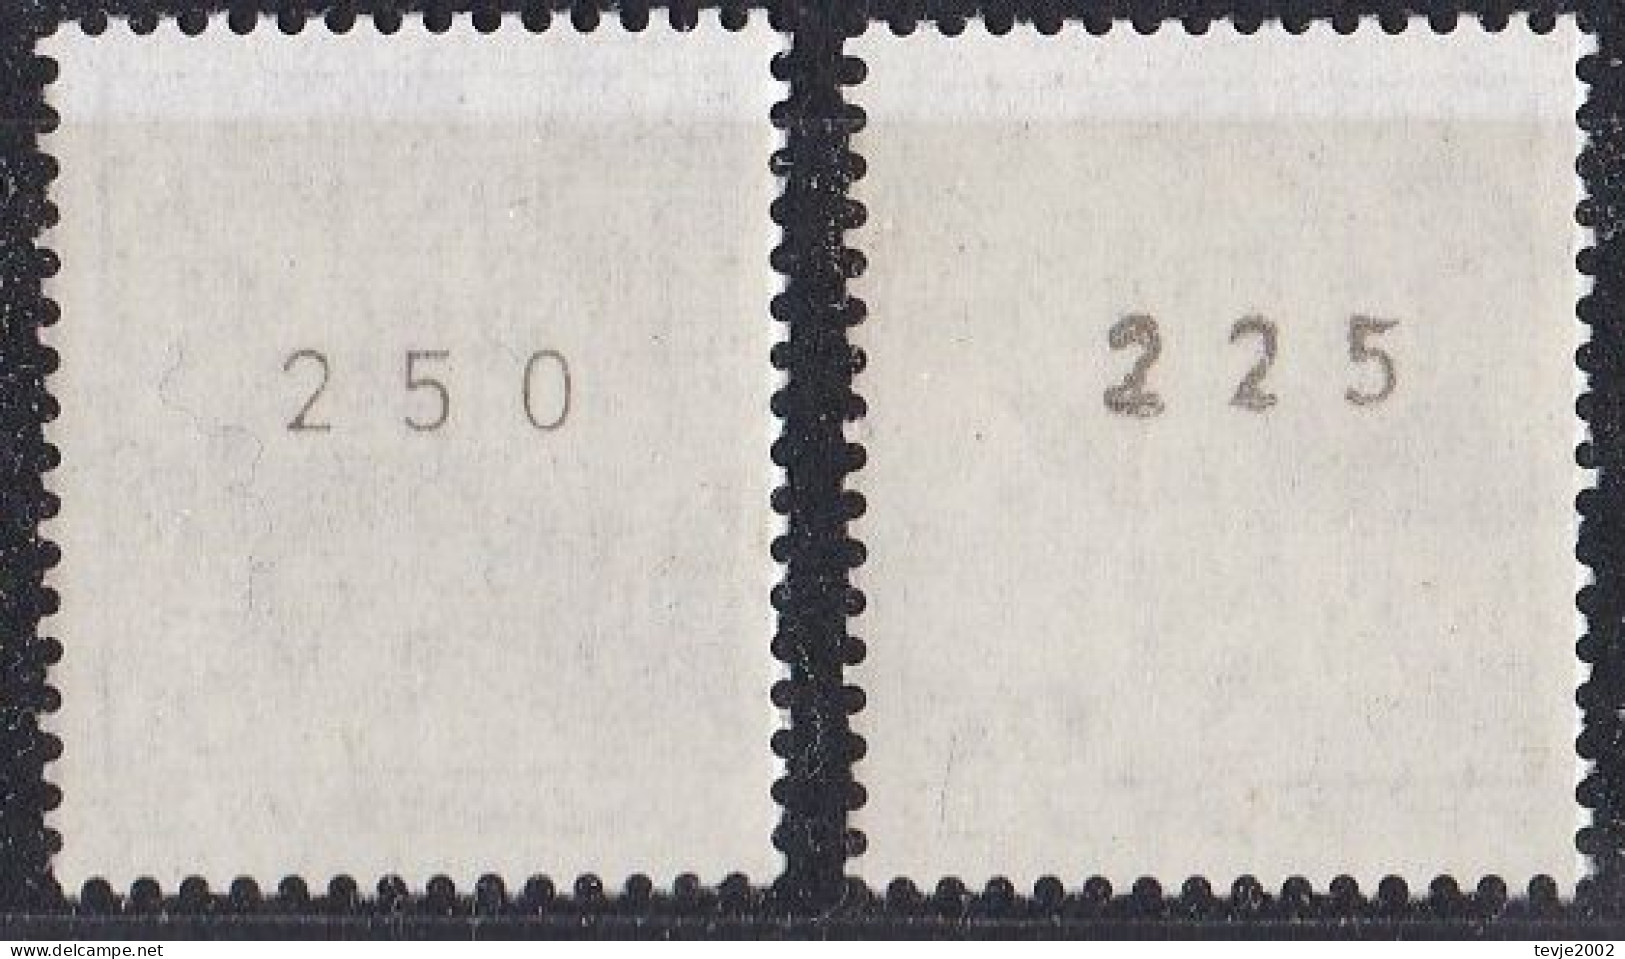 Berlin 1987 - Rollenmarken Mi.Nr. 532 AII + 534 AII - Postfrisch MNH - Letterset - Roller Precancels